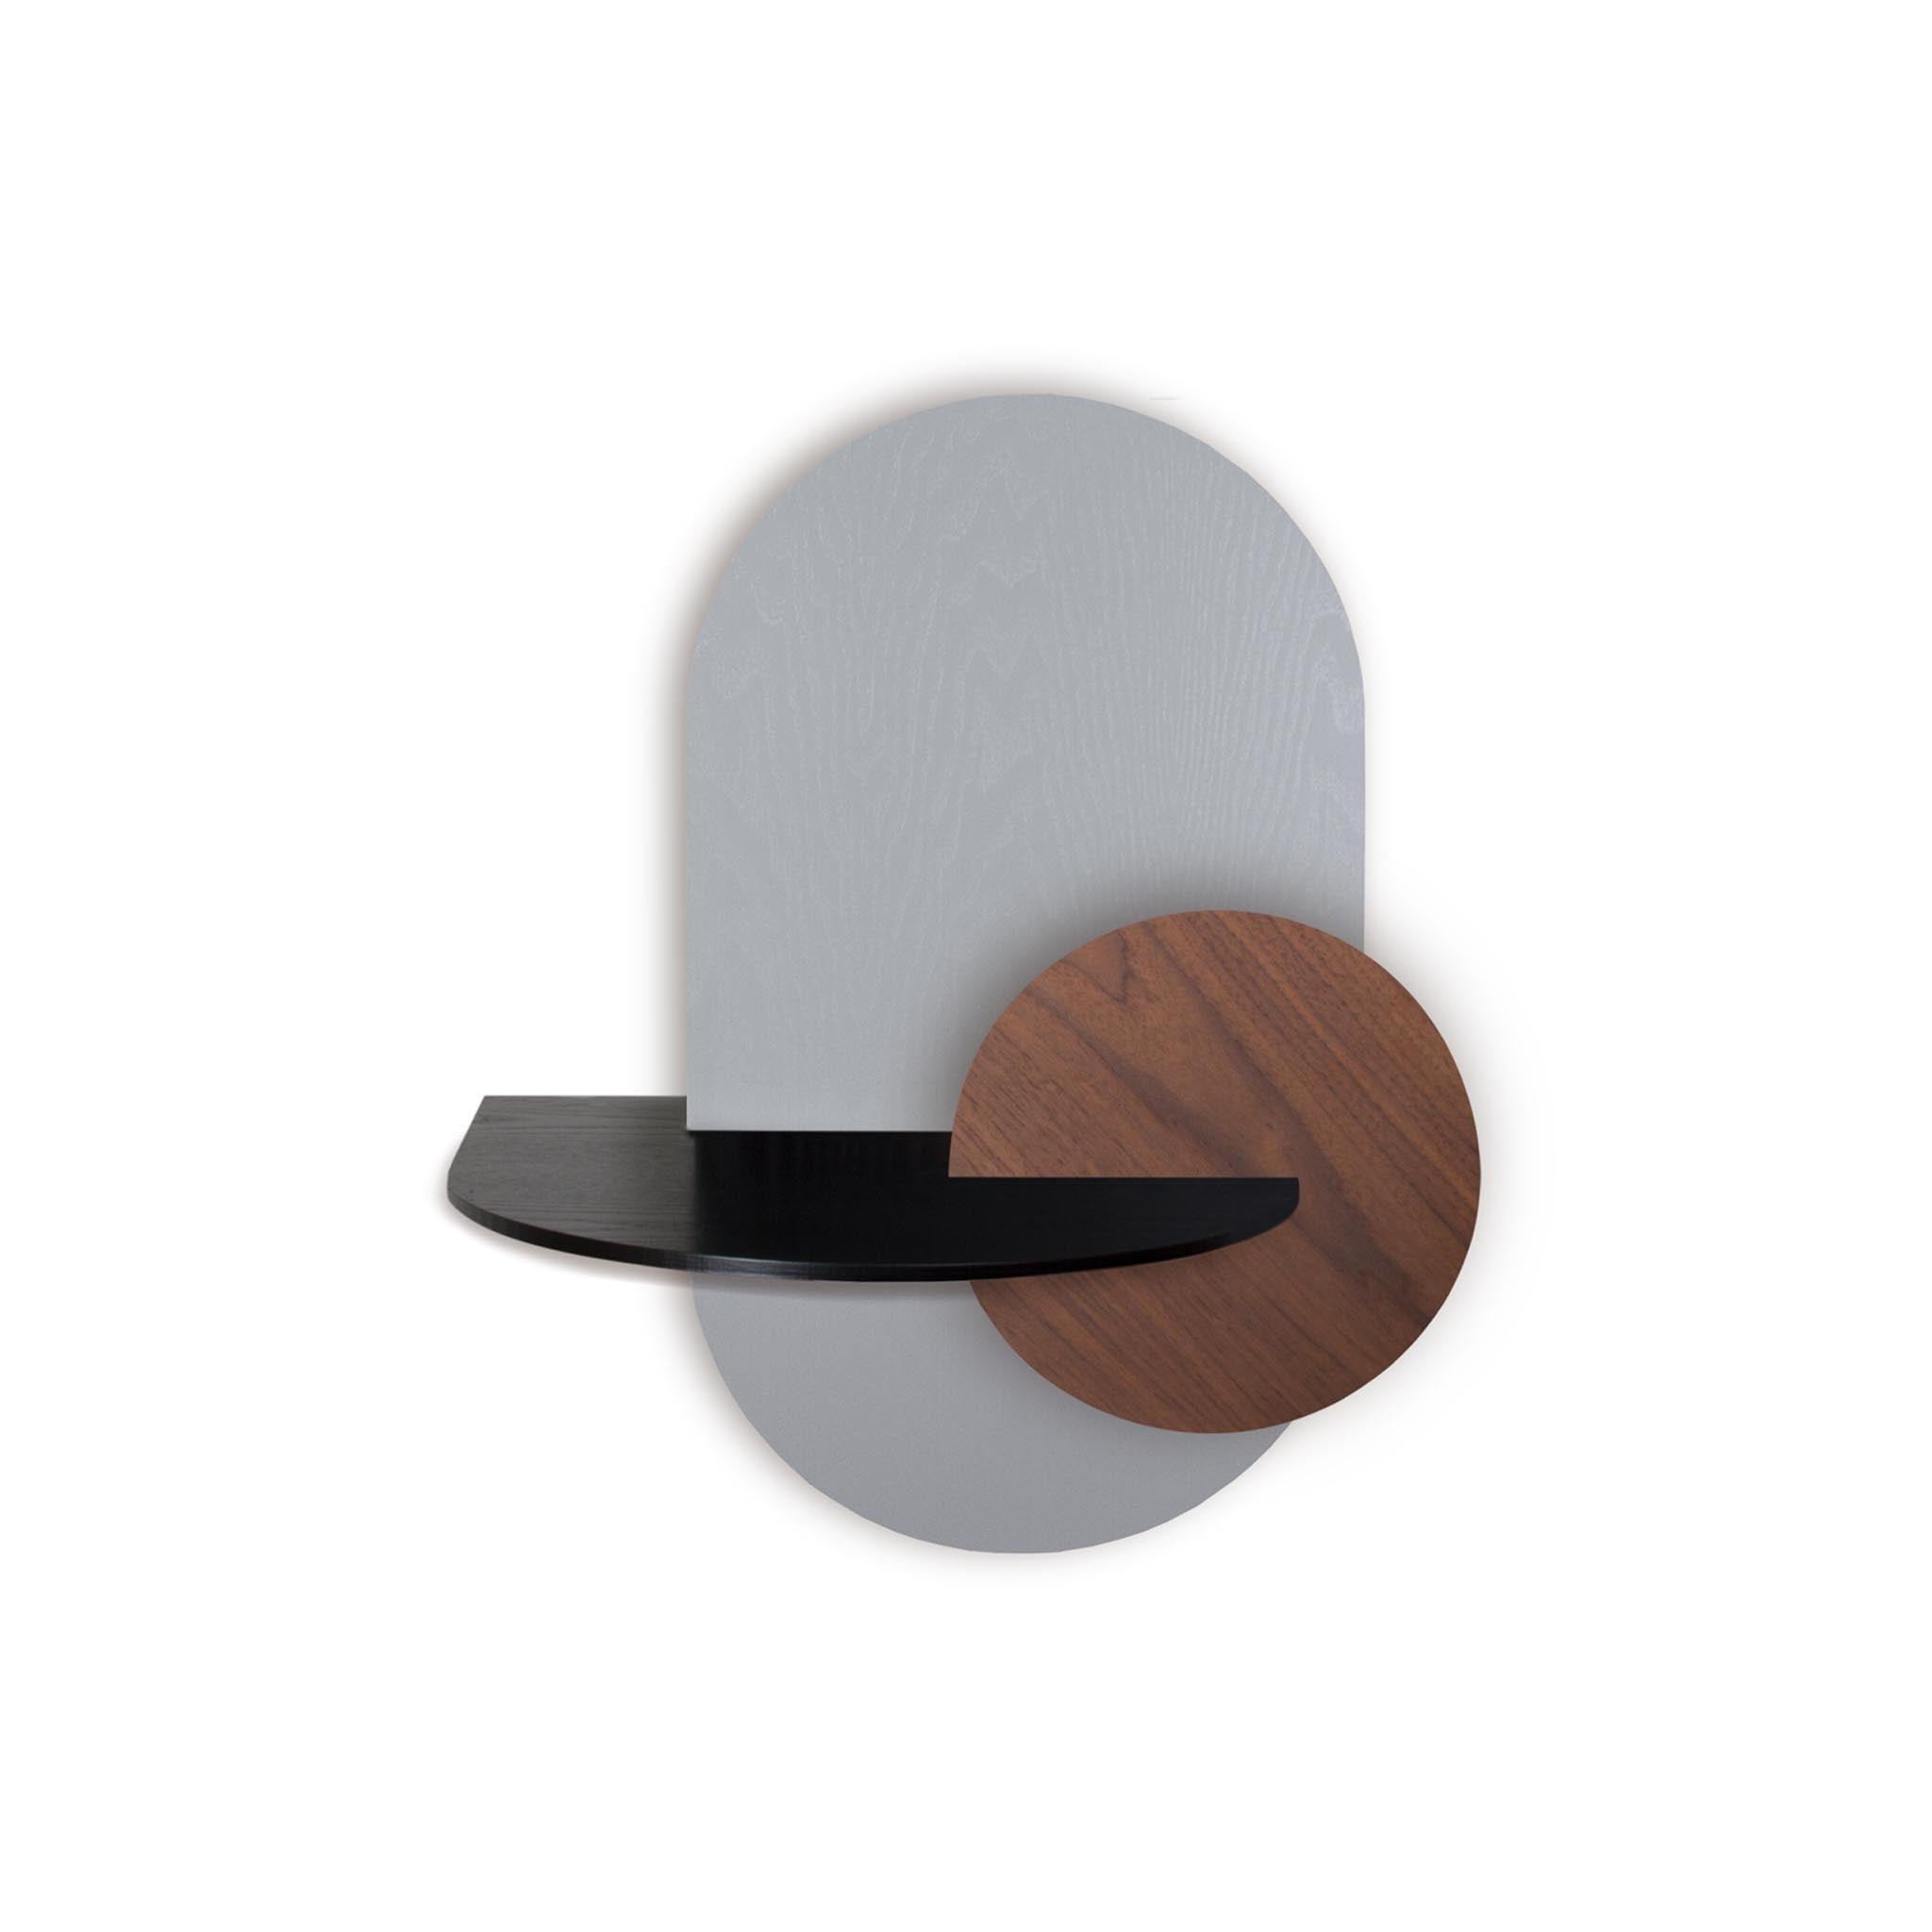 Alba floating nightstand · Grey oval